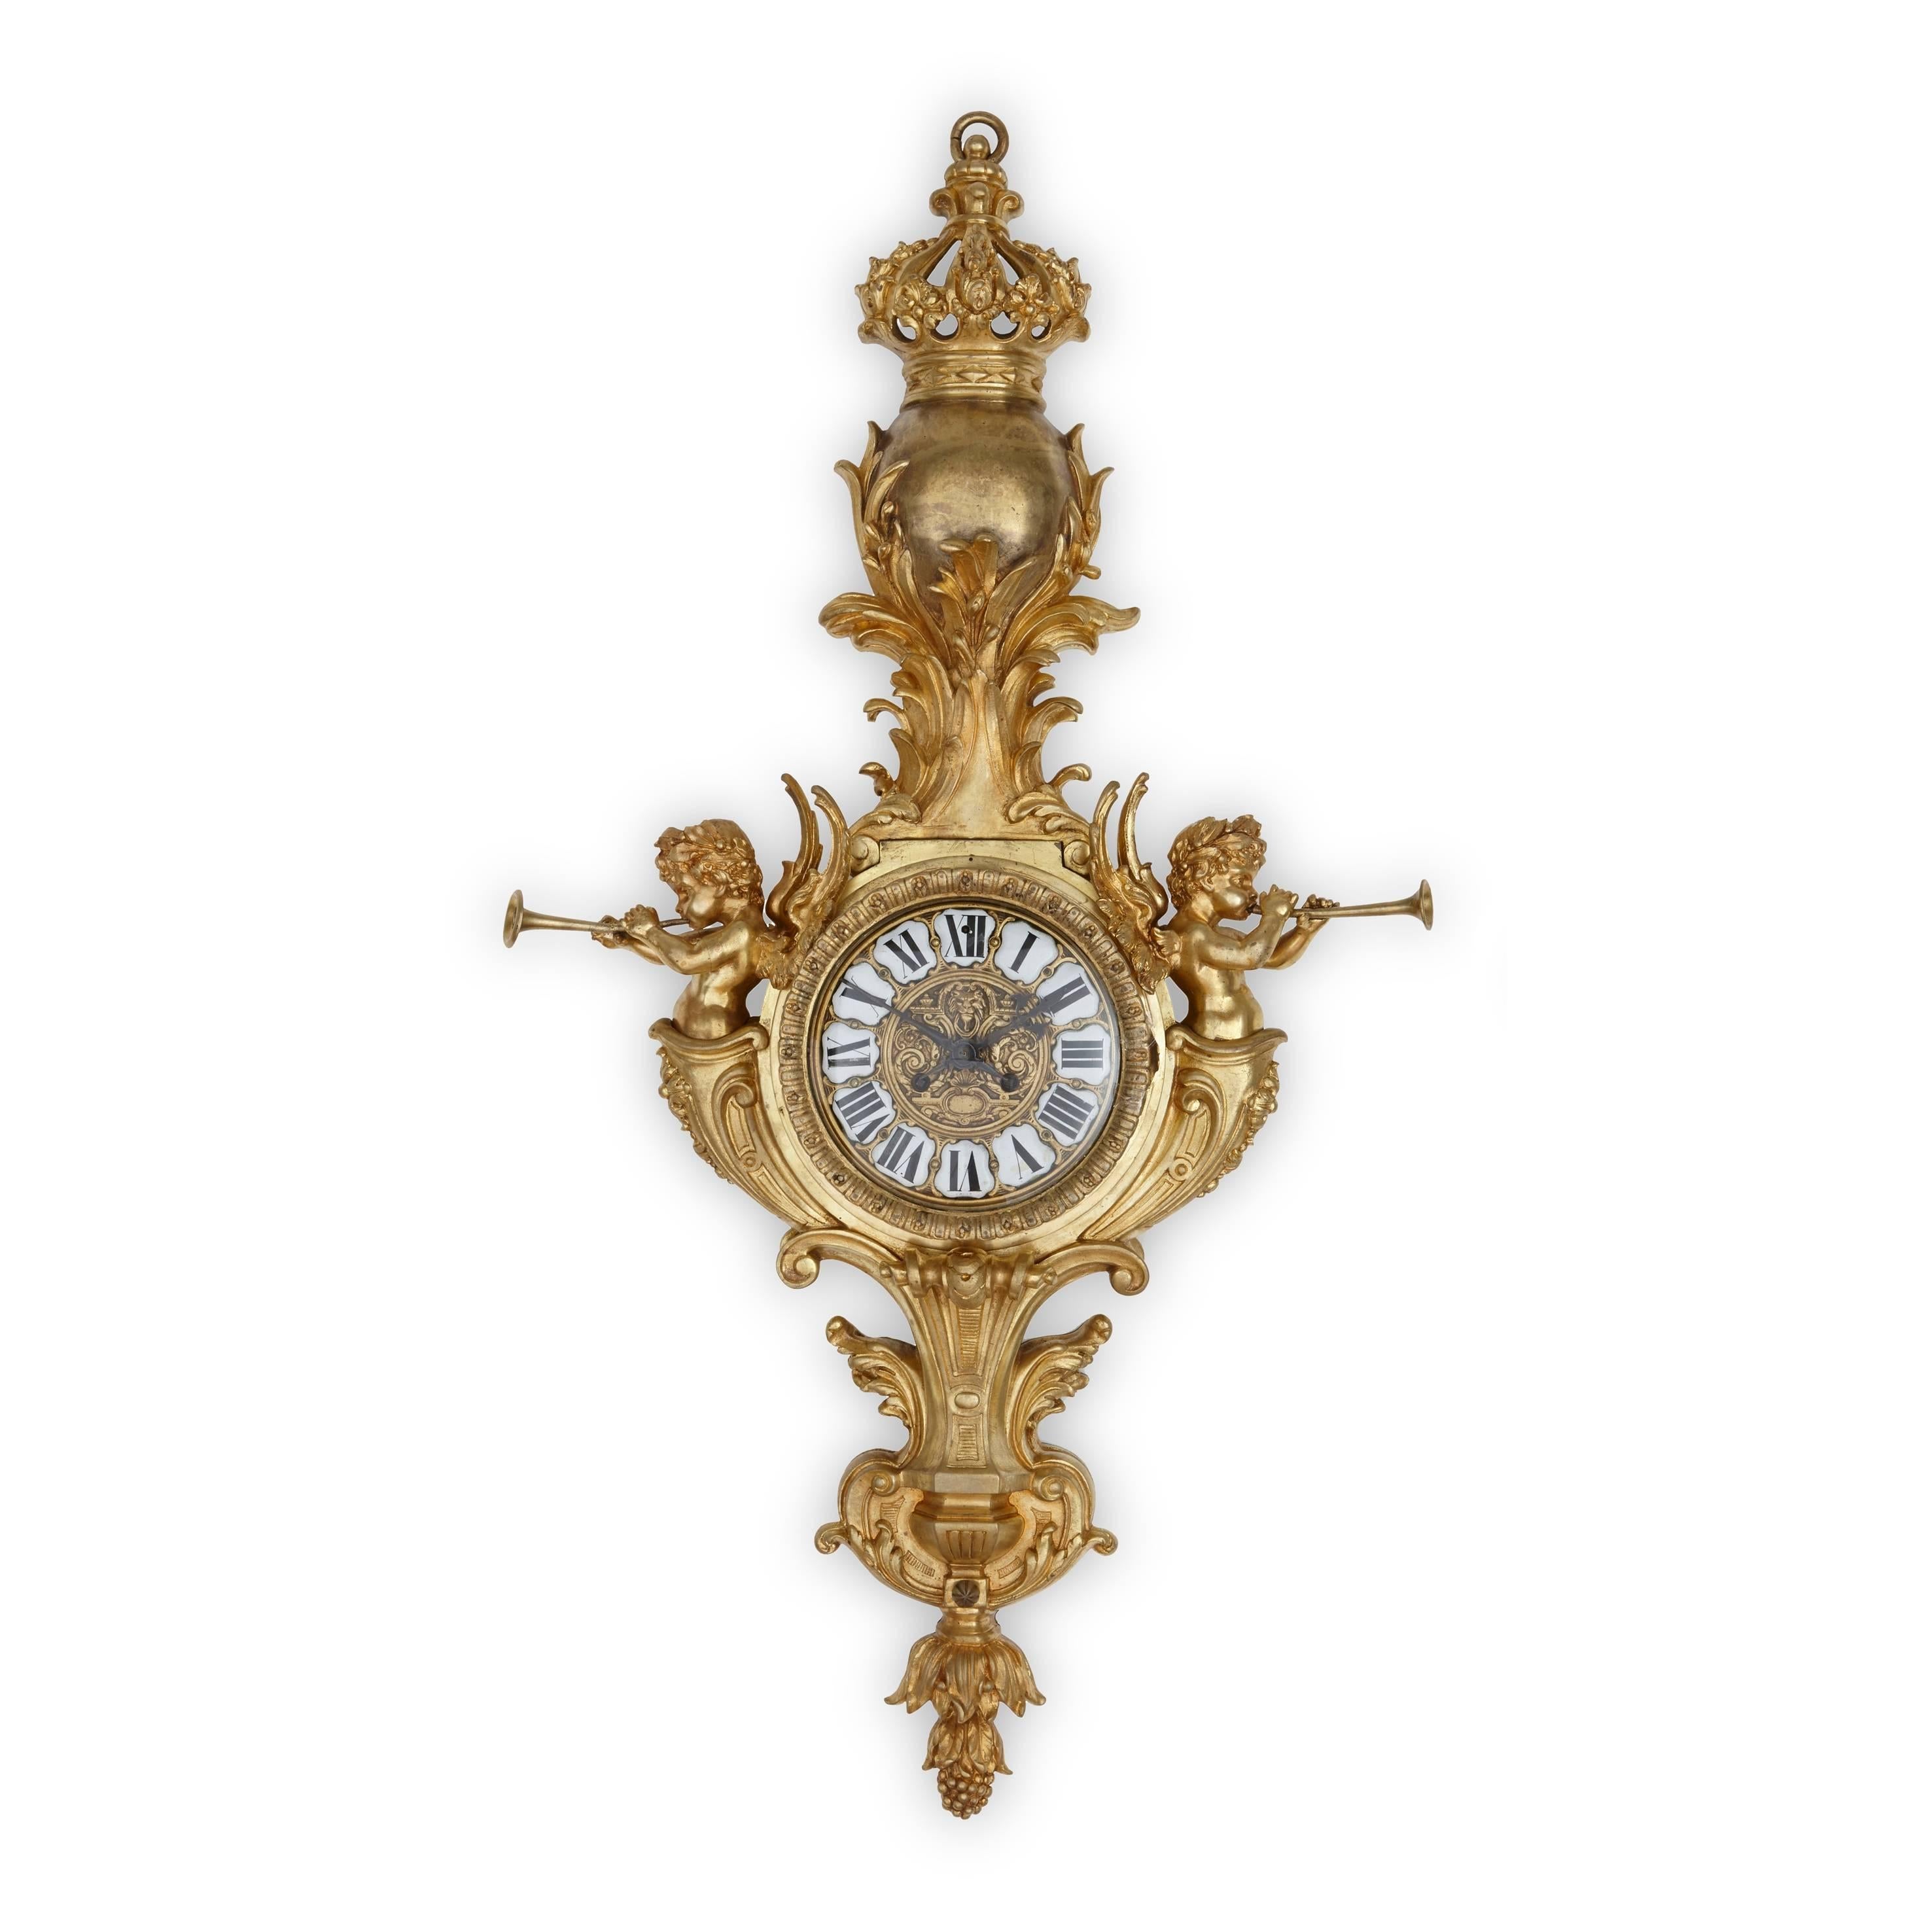 Sowohl die Uhr als auch das Barometer sind im Stil Ludwigs XVI. gefertigt und von einem Ormolu-Gehäuse umgeben, das auf beiden Seiten von trompetenschwingenden Putten flankiert wird, die jeweils von einer patinierten Bronzekugel mit einer Krone